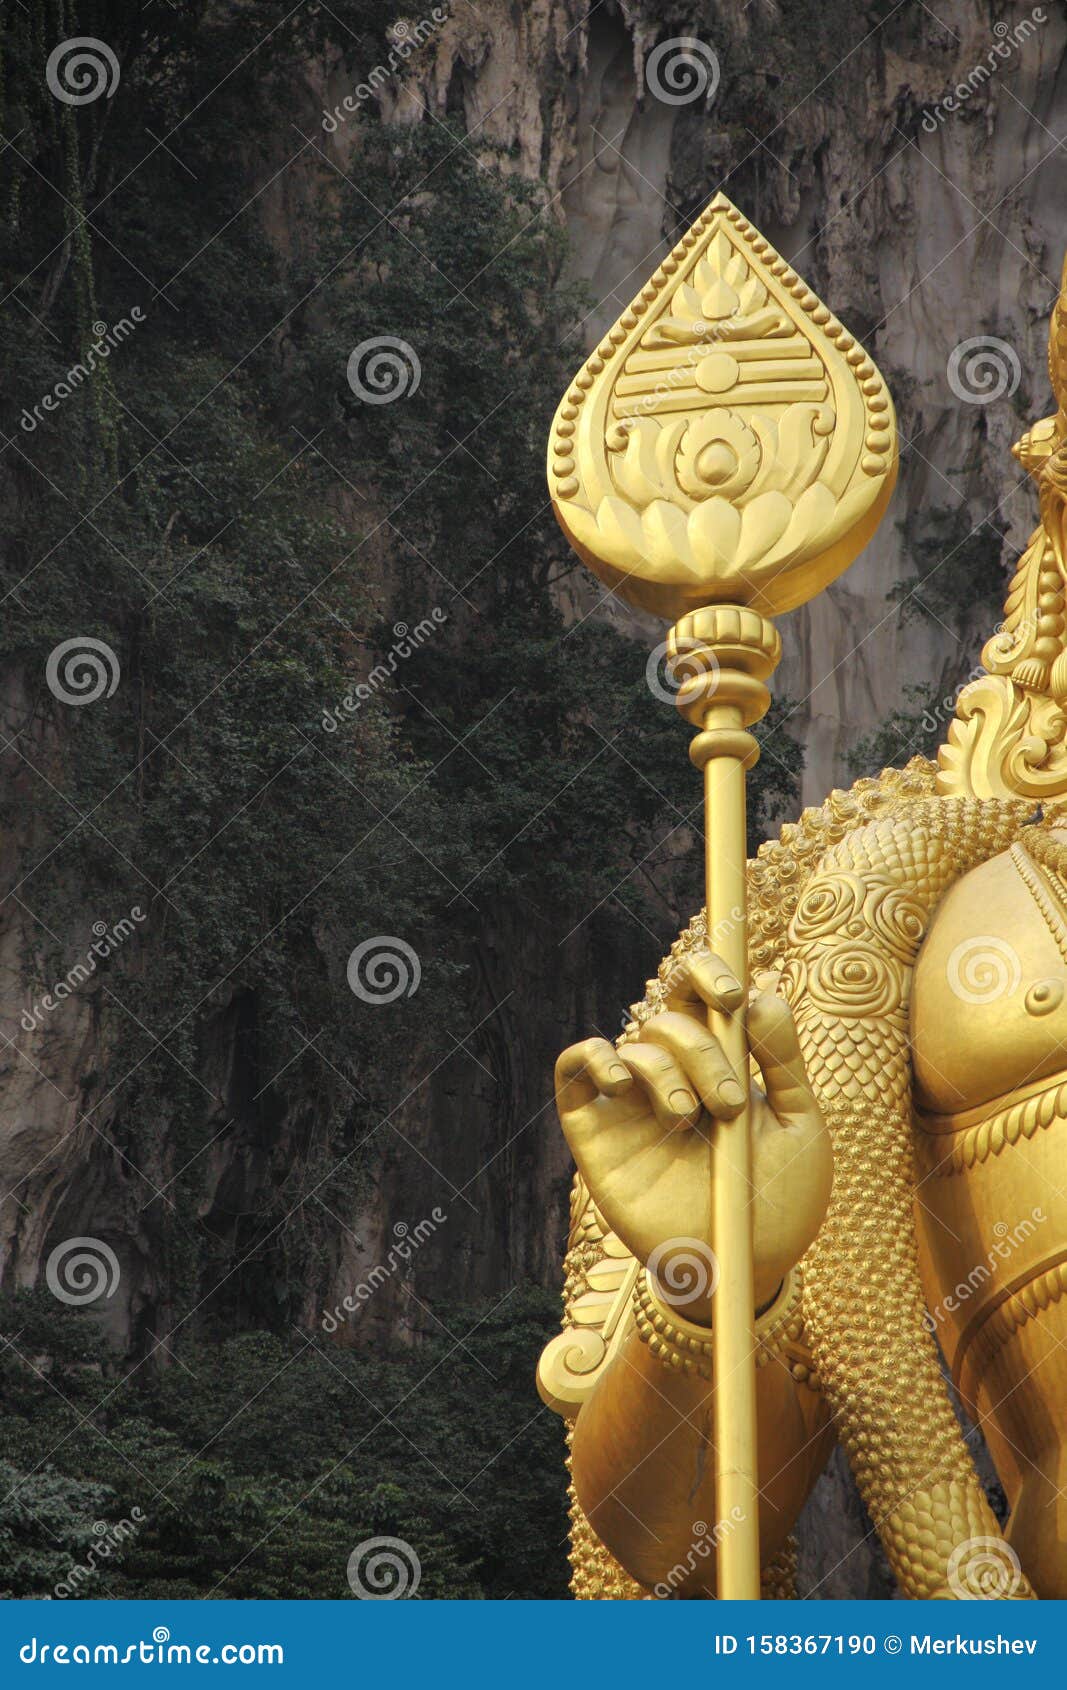 KUALA LUMPUR, MALAYSIA - AUGUST 23, 2013: Giant Lord Murugan Hindu ...